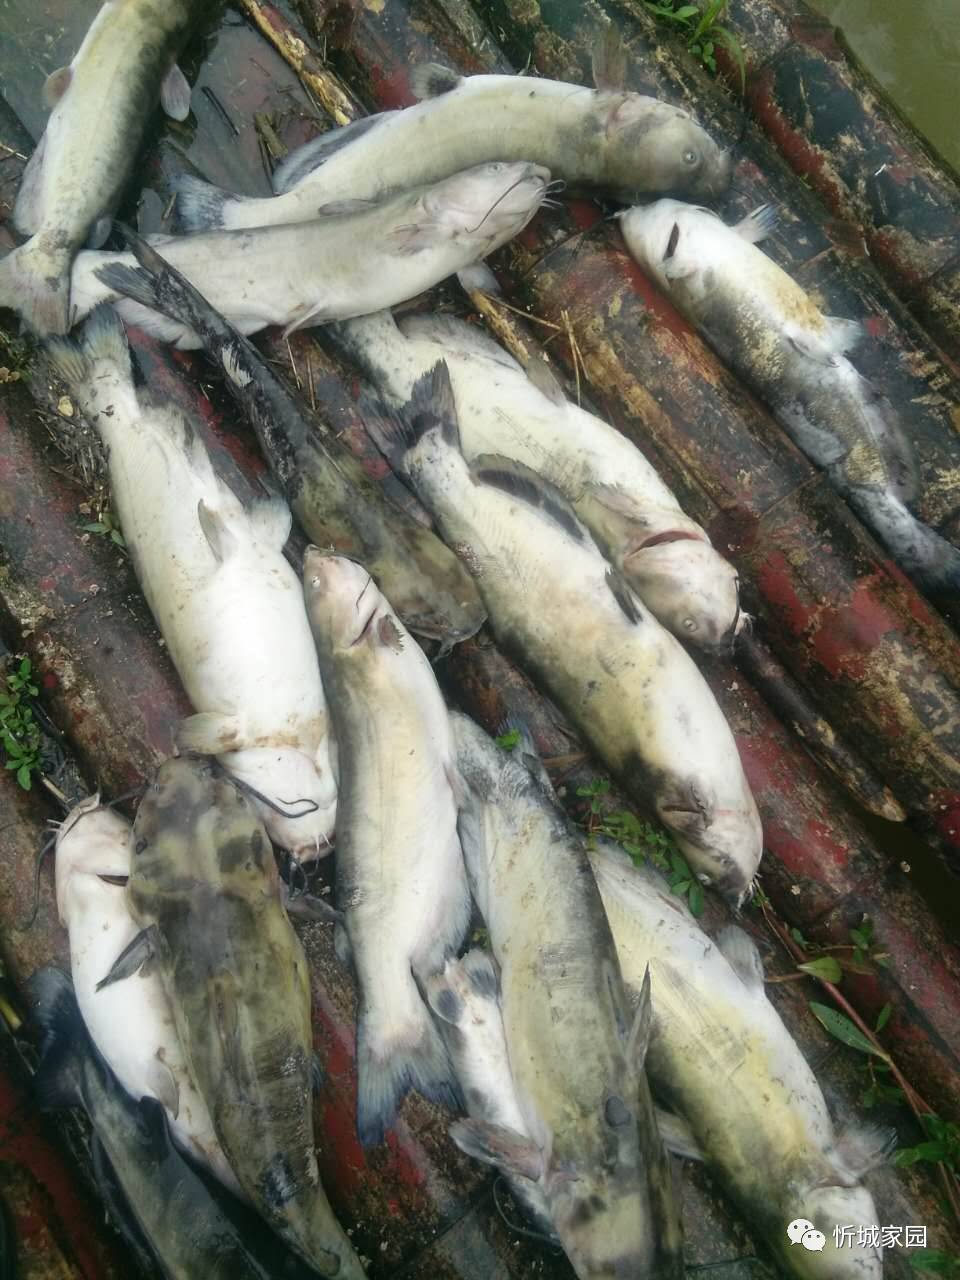 关于红渡镇红水河网箱养鱼户发现死鱼的情况续报